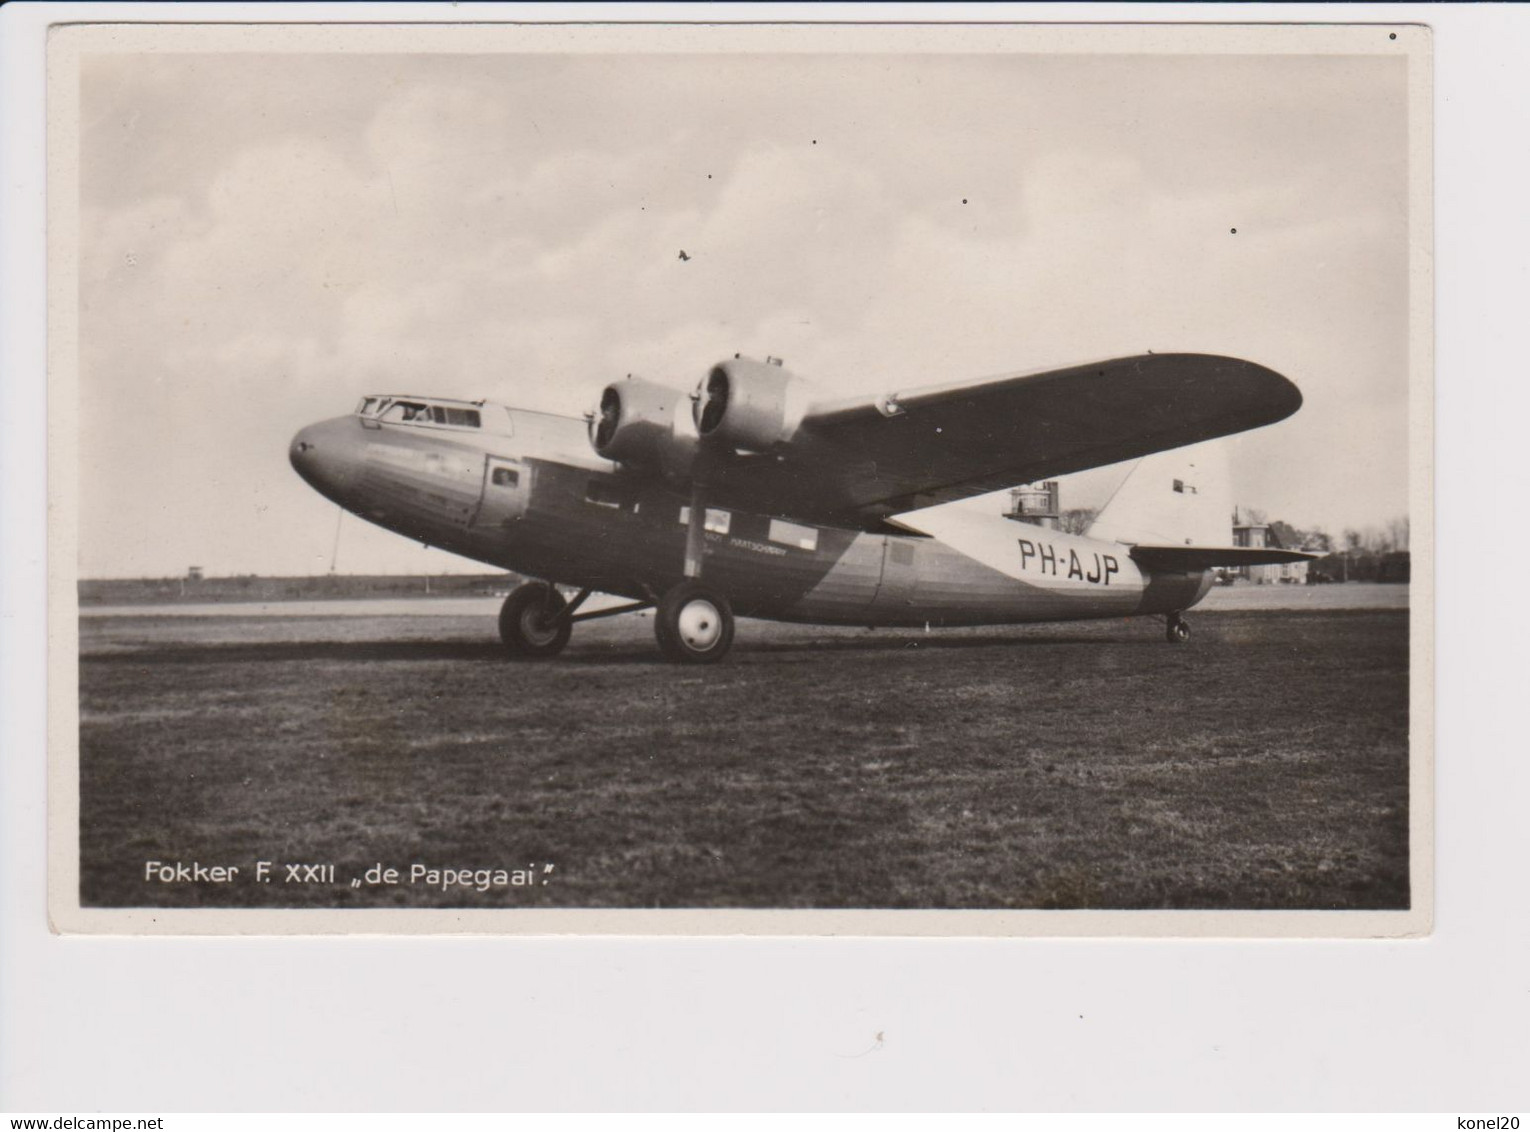 Vintage Rppc KLM K.L.M. Royal Dutch Airlines Fokker F-22 Aircraft @ Vliegveld Schiphol Airport - 1919-1938: Entre Guerres